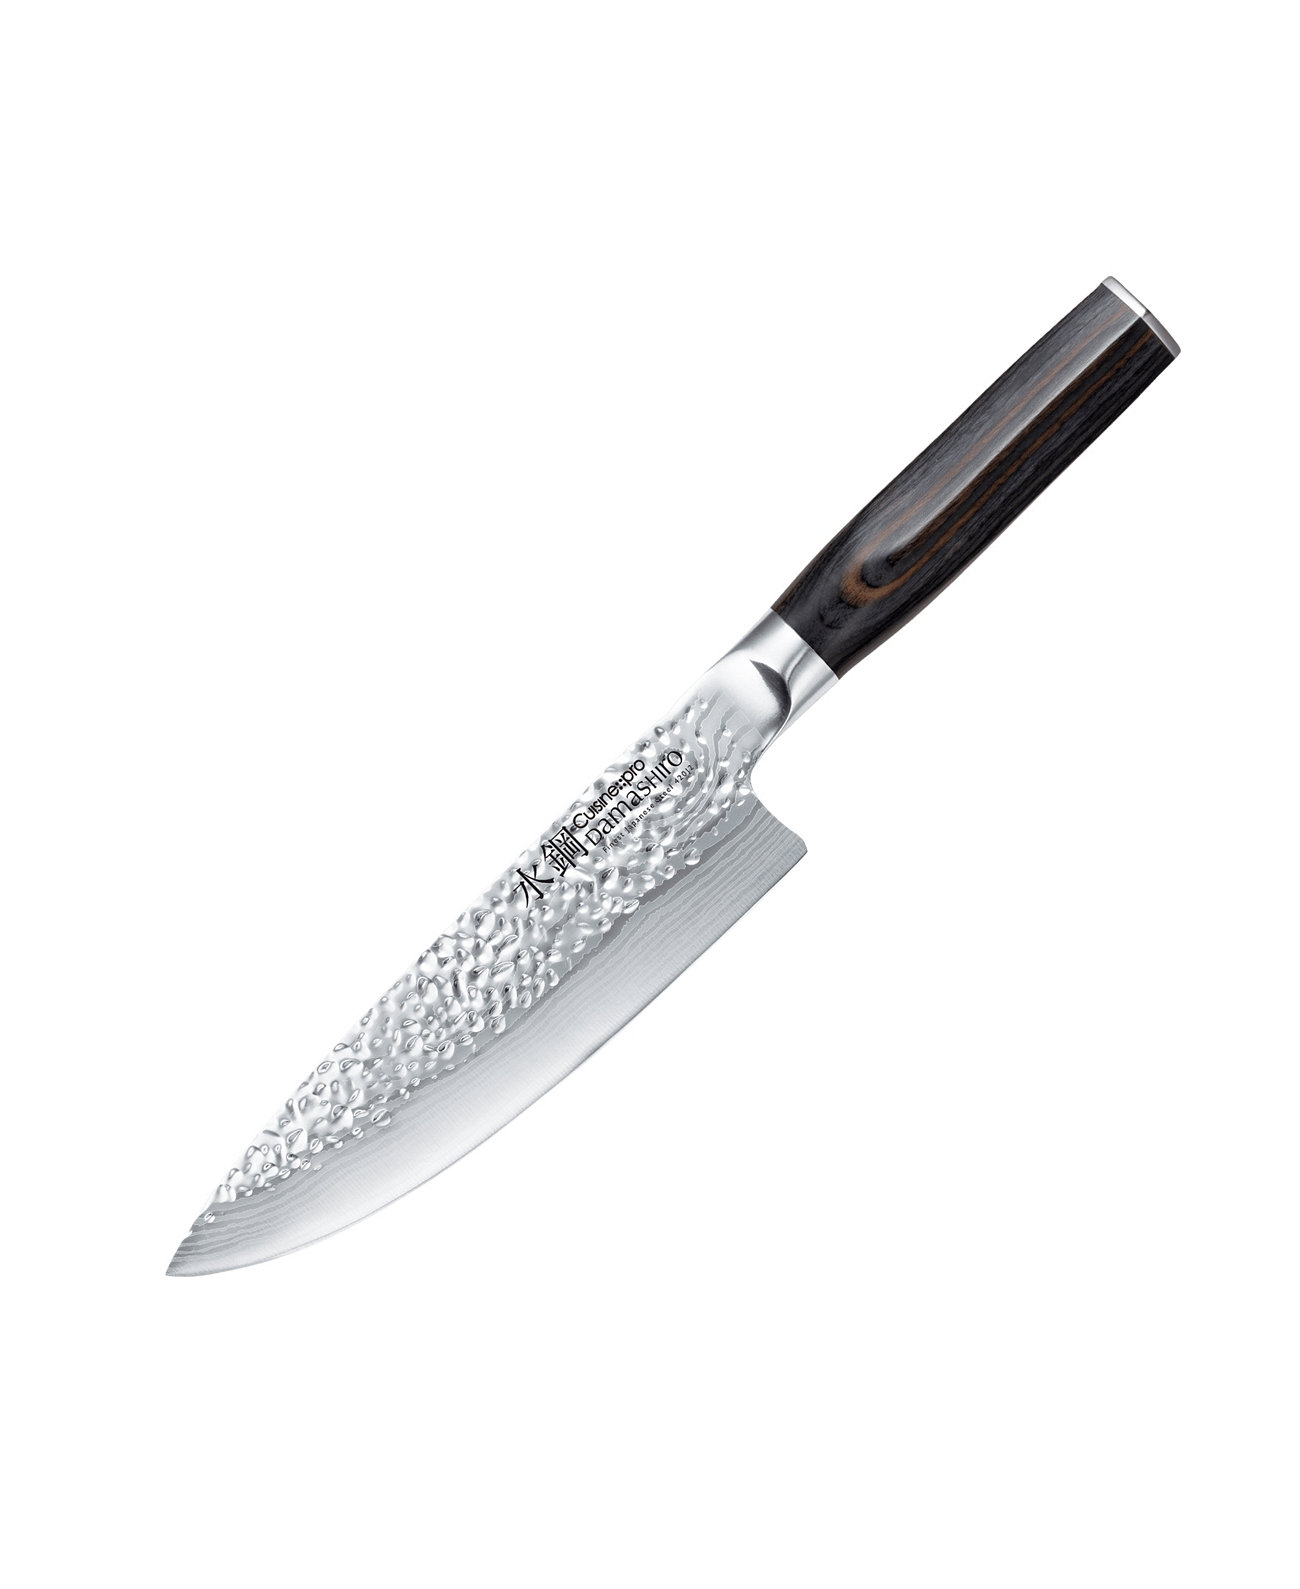 Дамасиро 6-дюймовый императорский поварской нож Cuisine::pro®